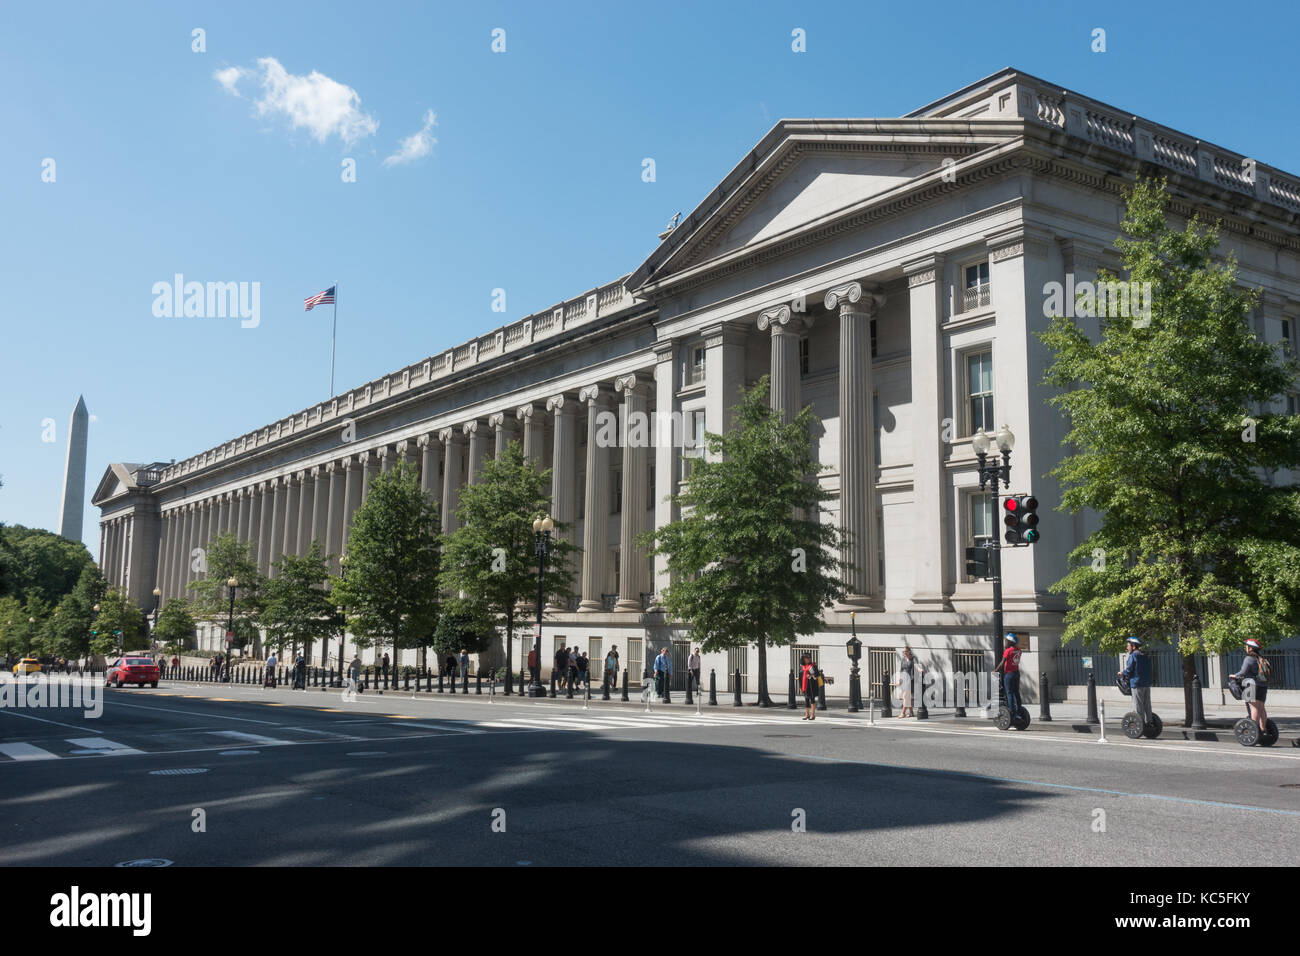 L'édifice du ministère du trésor des États-Unis, Washington, DC Washington monument. inbackground segway, touristes, aussi. 15e côté rue. Banque D'Images